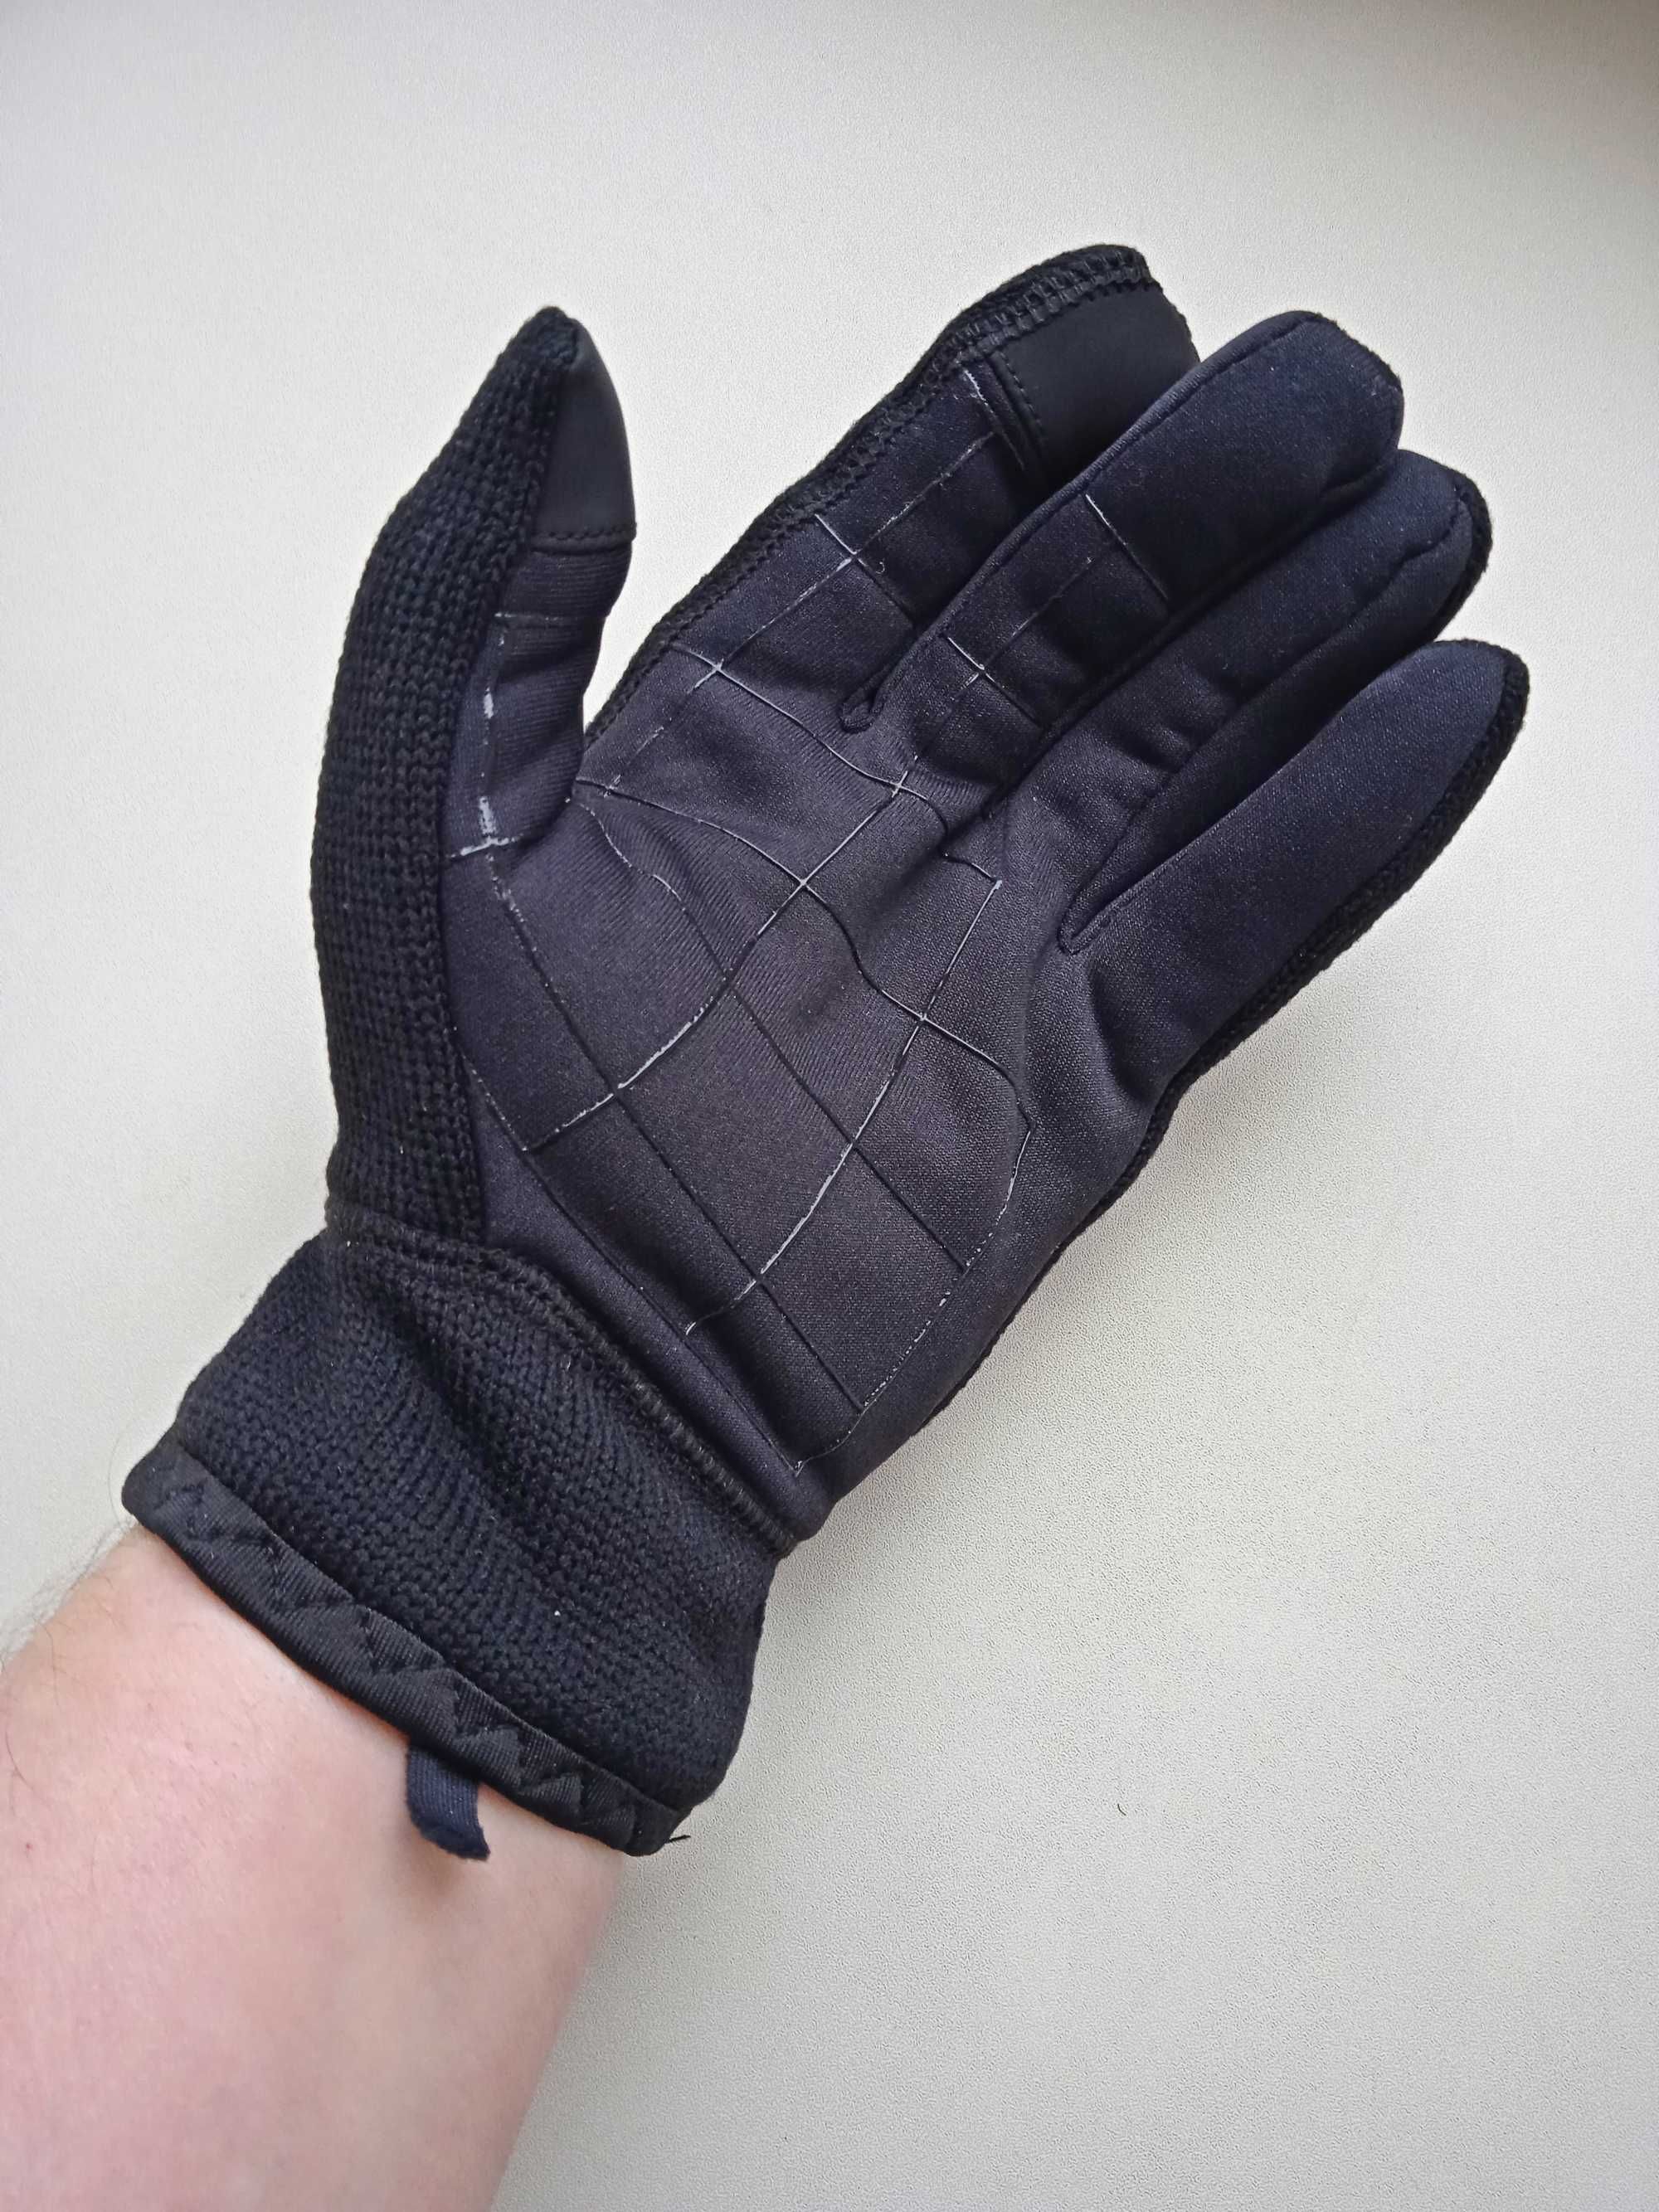 Зимние перчатки, Зимові рукавички Levi's. Куплені в США.  Оригінал